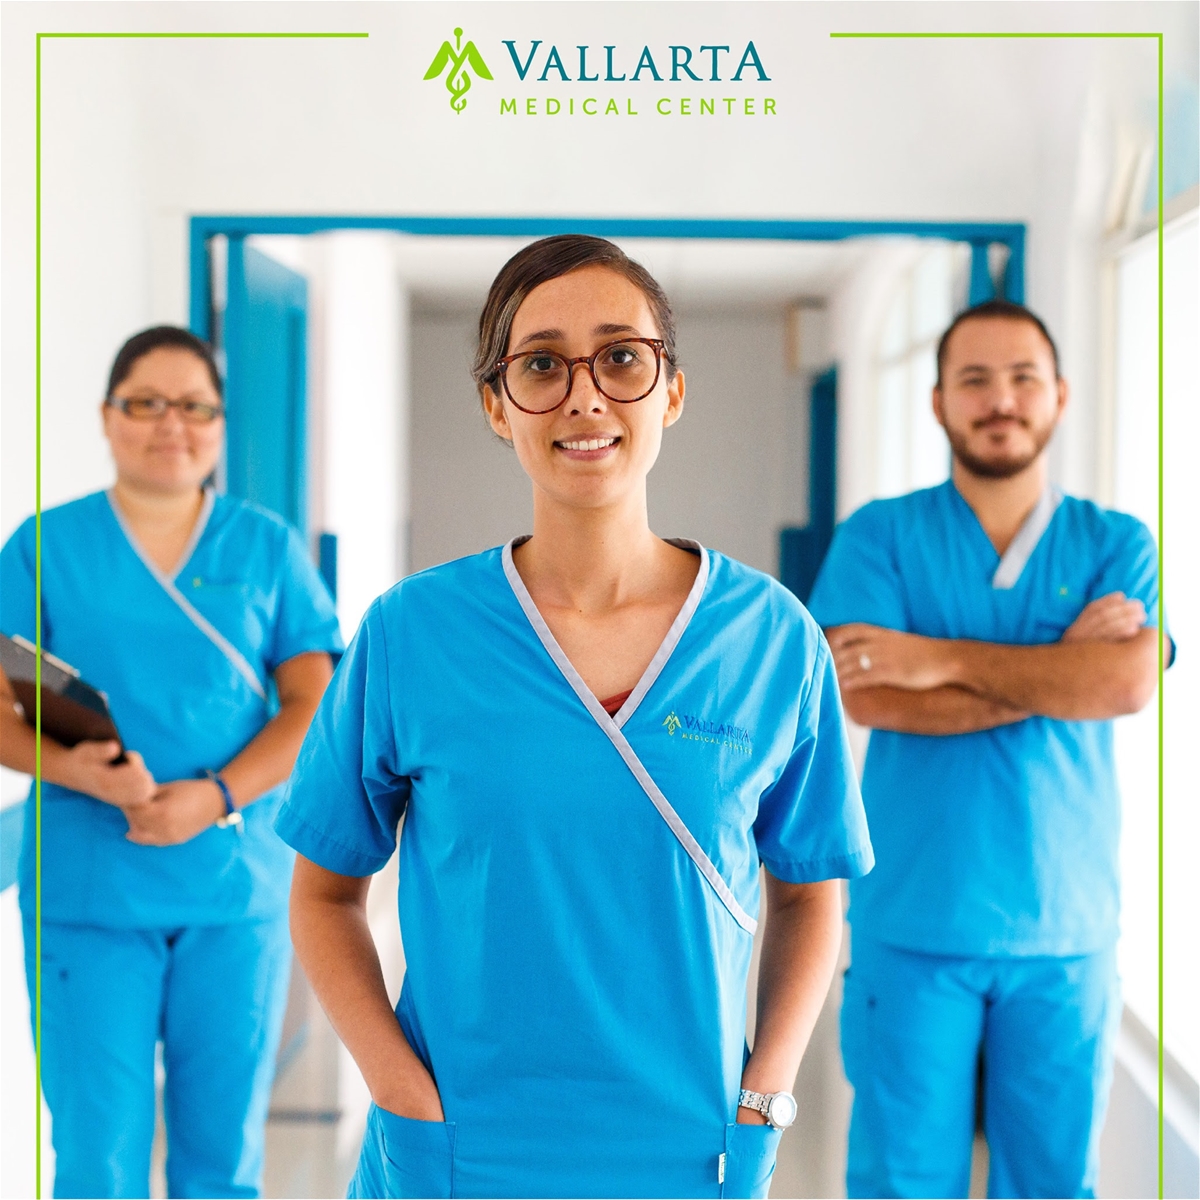 Vallarta Medical Center - A Full Service Hospital